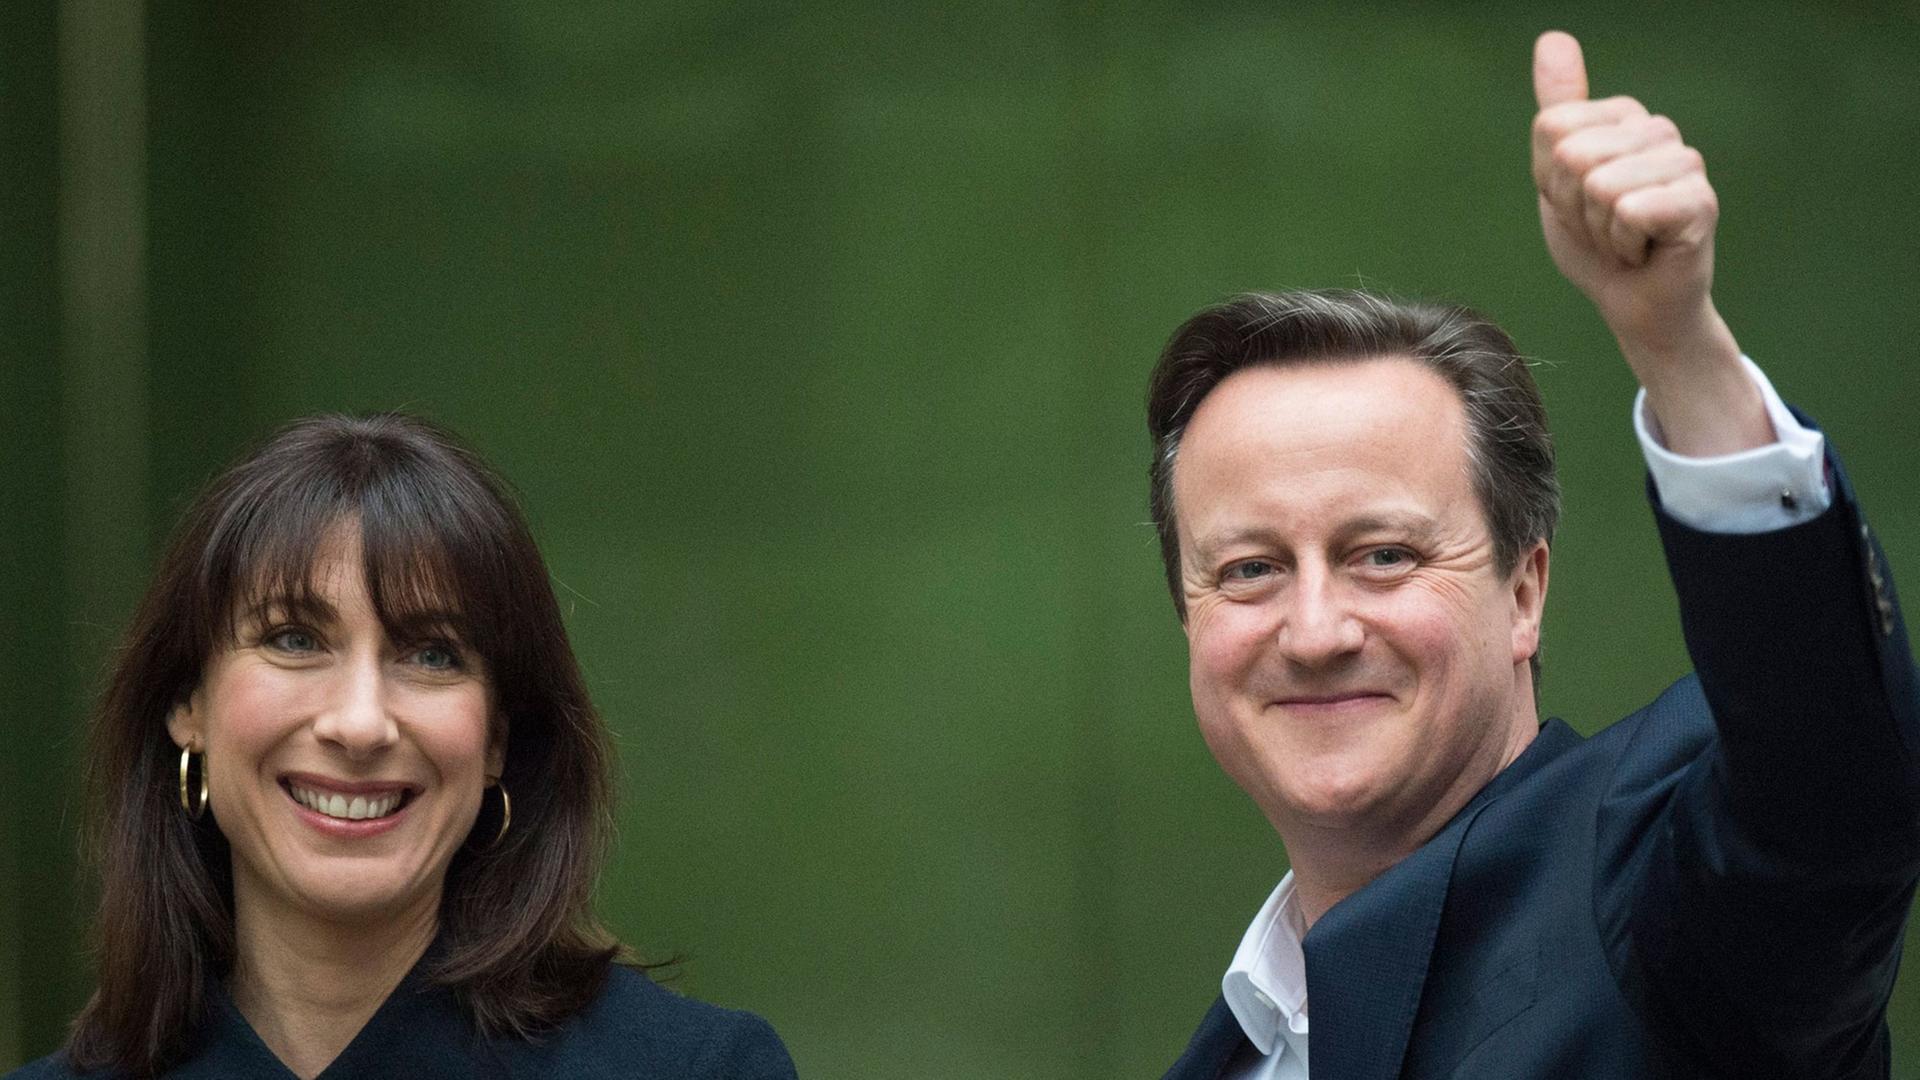 Premierminister David Cameron mit seiner Frau Samantha nach seinem Wahlsieg am 8. Mai 2015 vor grünem Hintergrund